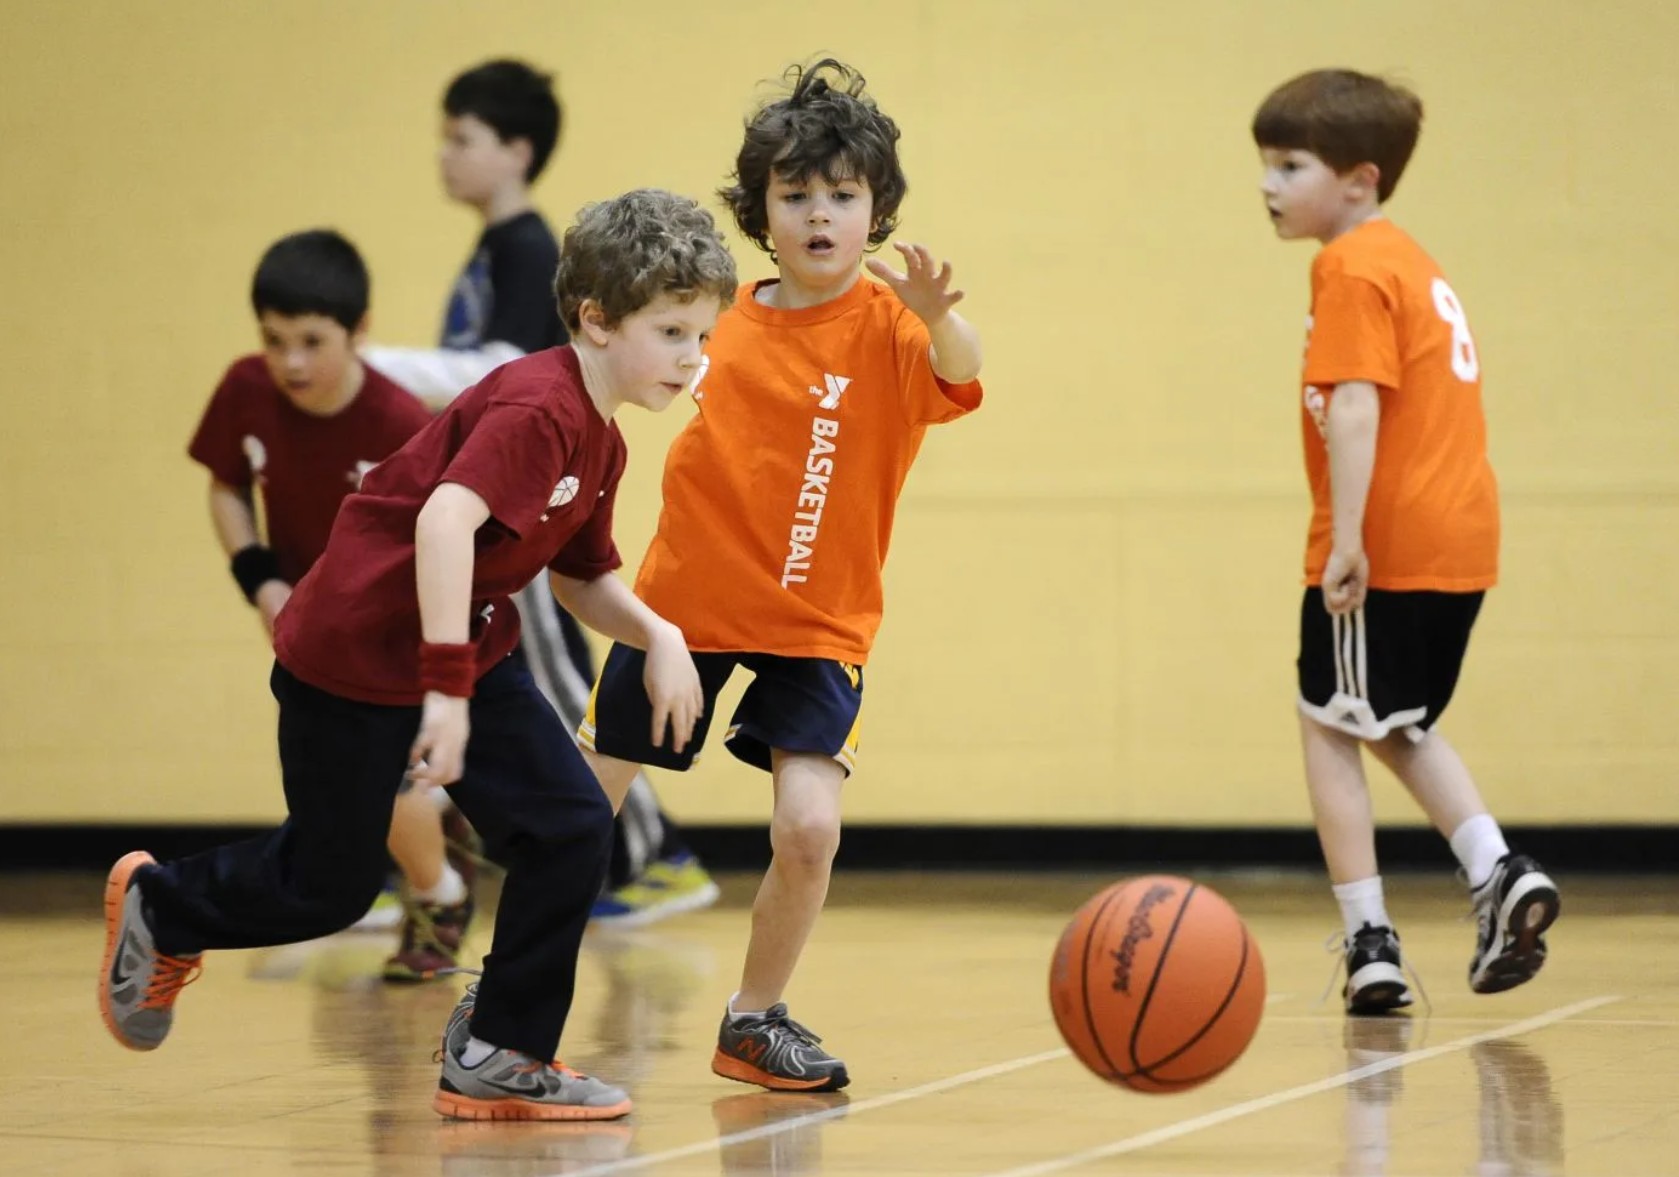 Школьная спортивная команда. Баскетбол дети. Дети играющие в баскетбол. Спортивные игры для детей. Спорт дети.